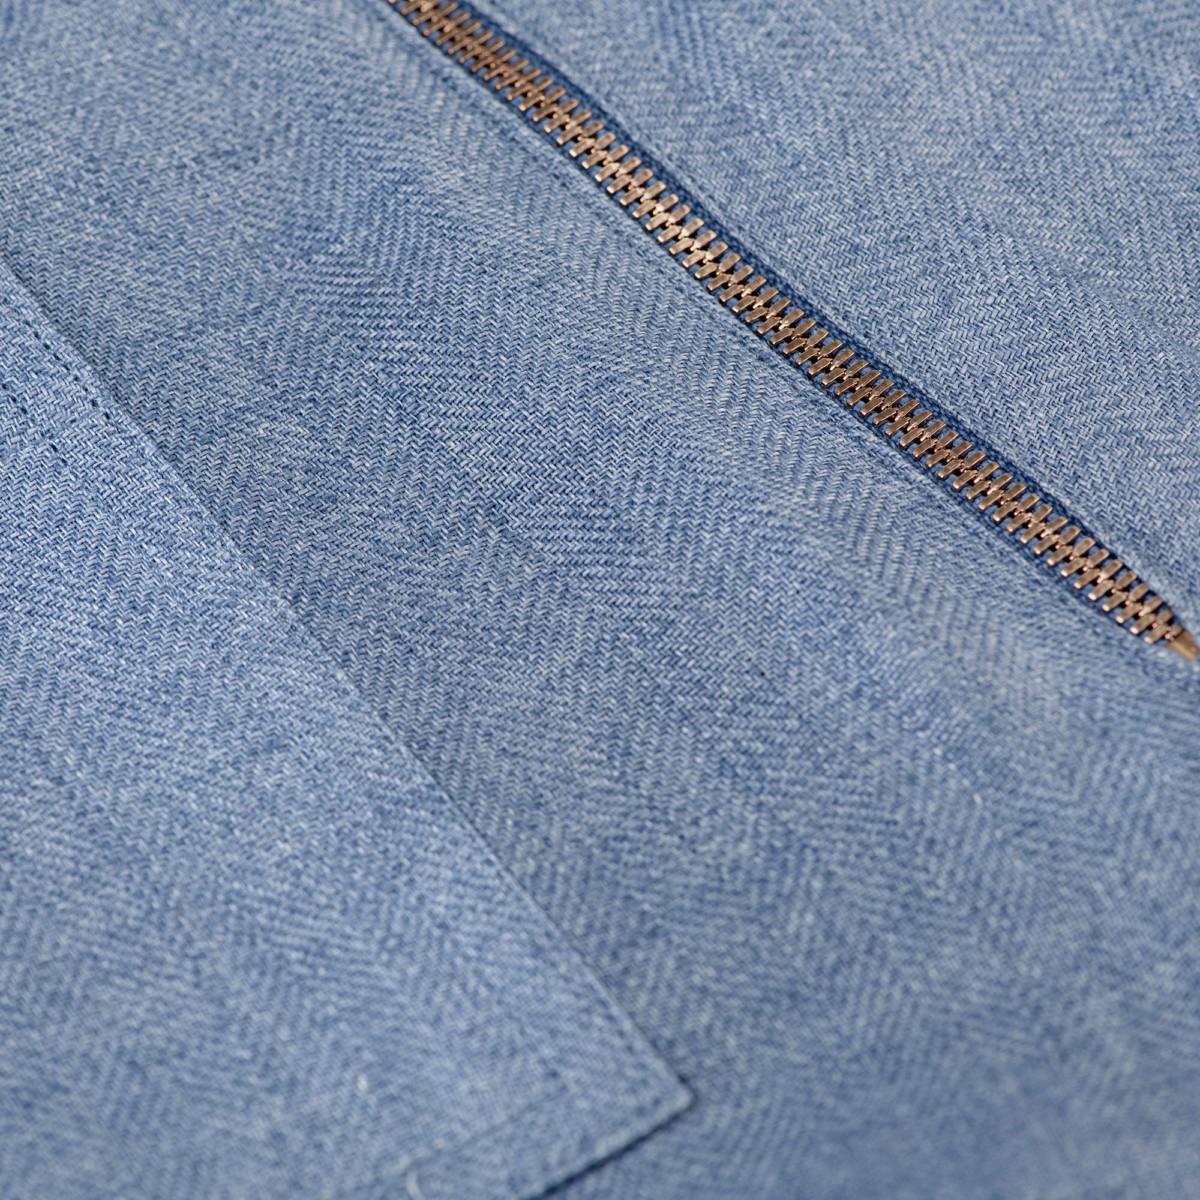 Short linen pants with zip for Woman jeans color details 100% Capri